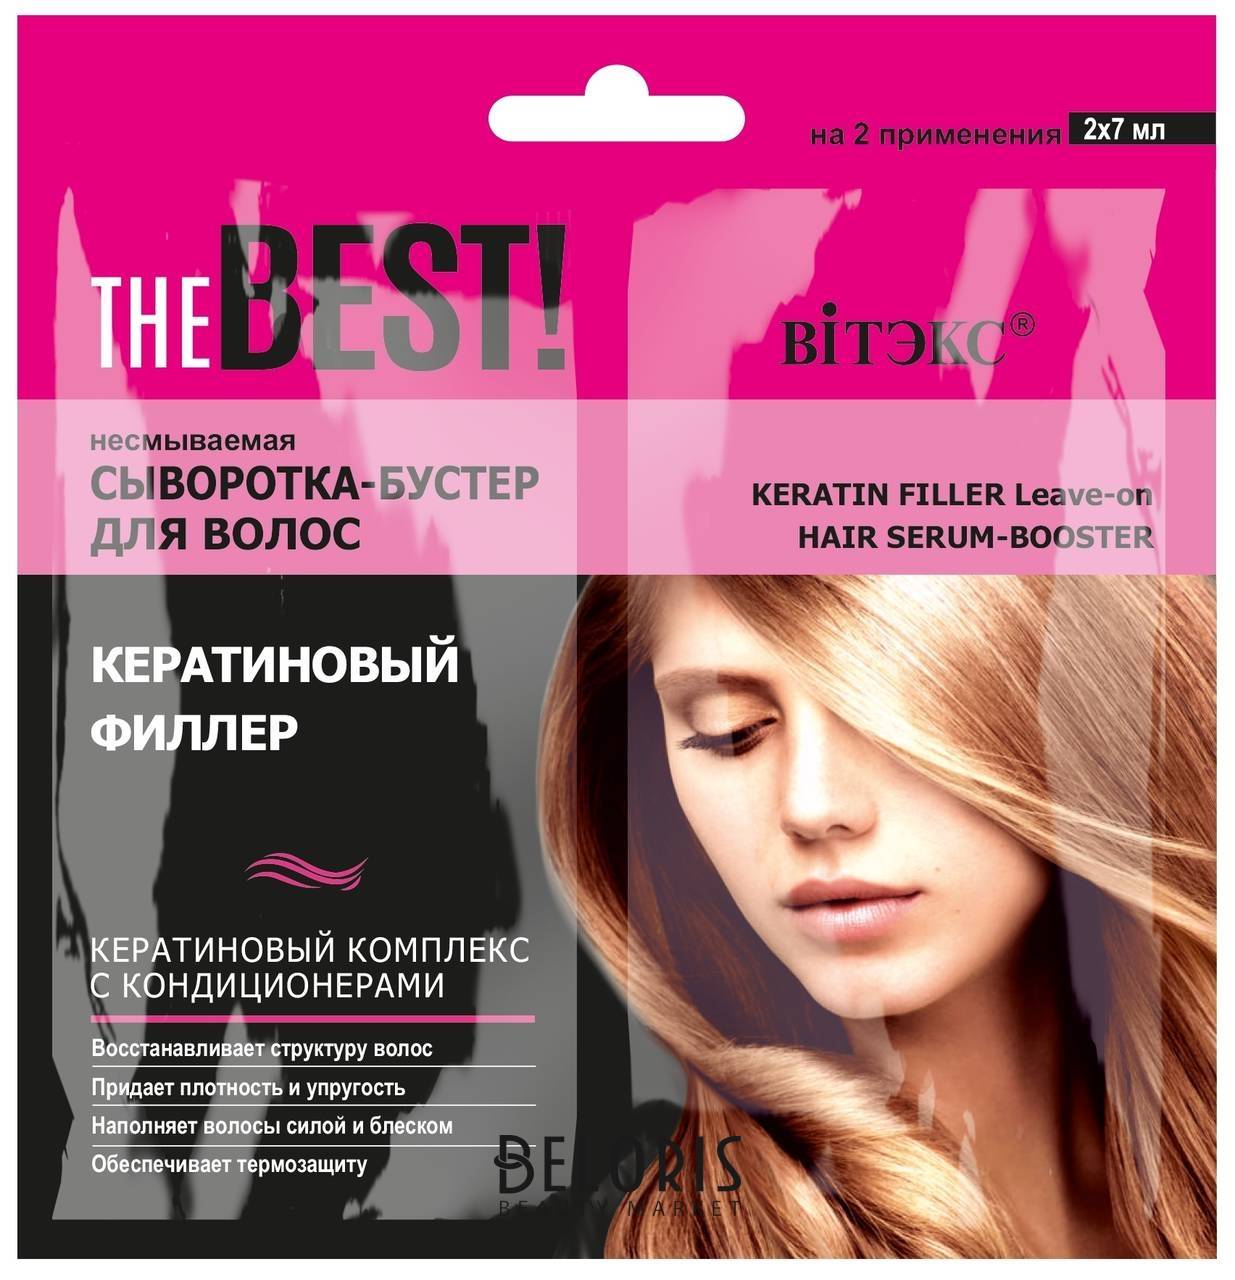 Несмываемая сыворотка-бустер для волос кератиновый филлер THE Best! Белита - Витекс THE Best!